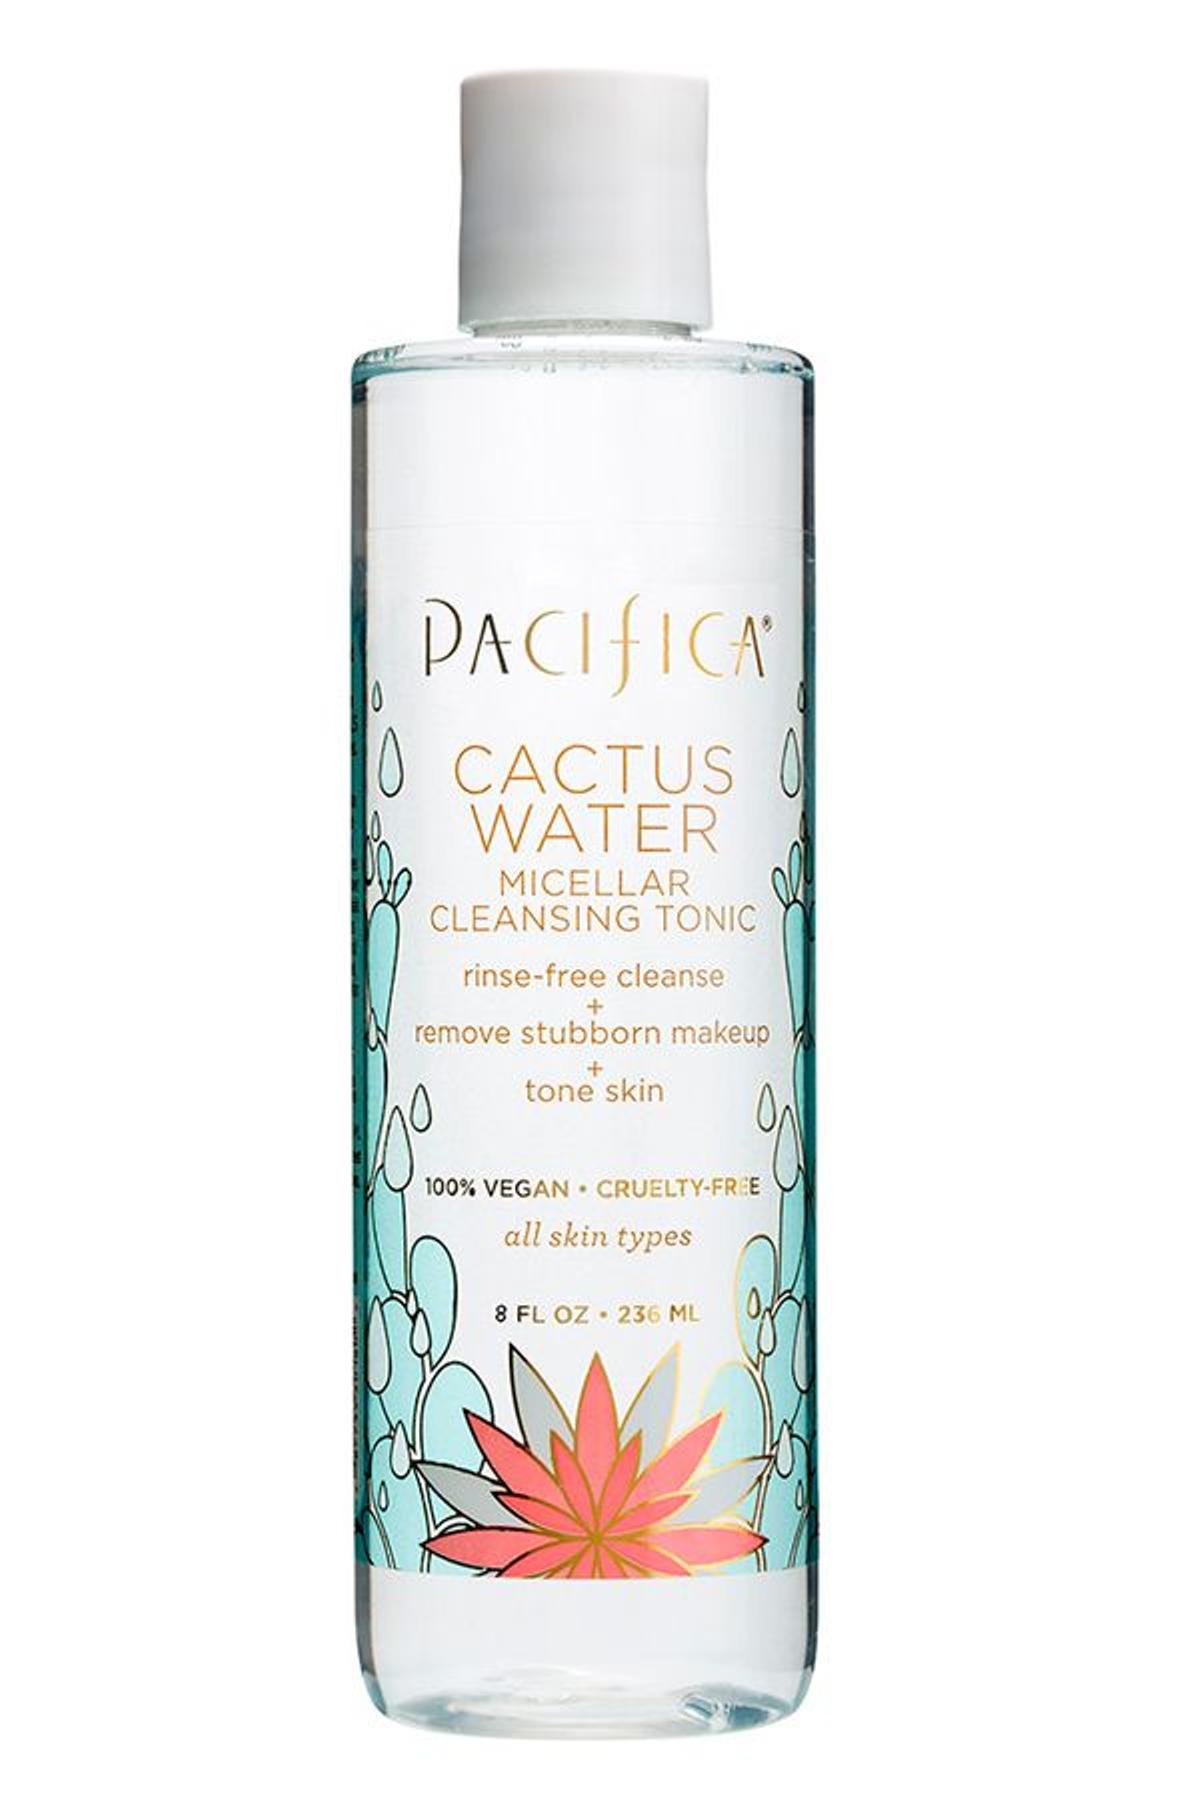 Productos con cactus: agua micelar de Pacifica